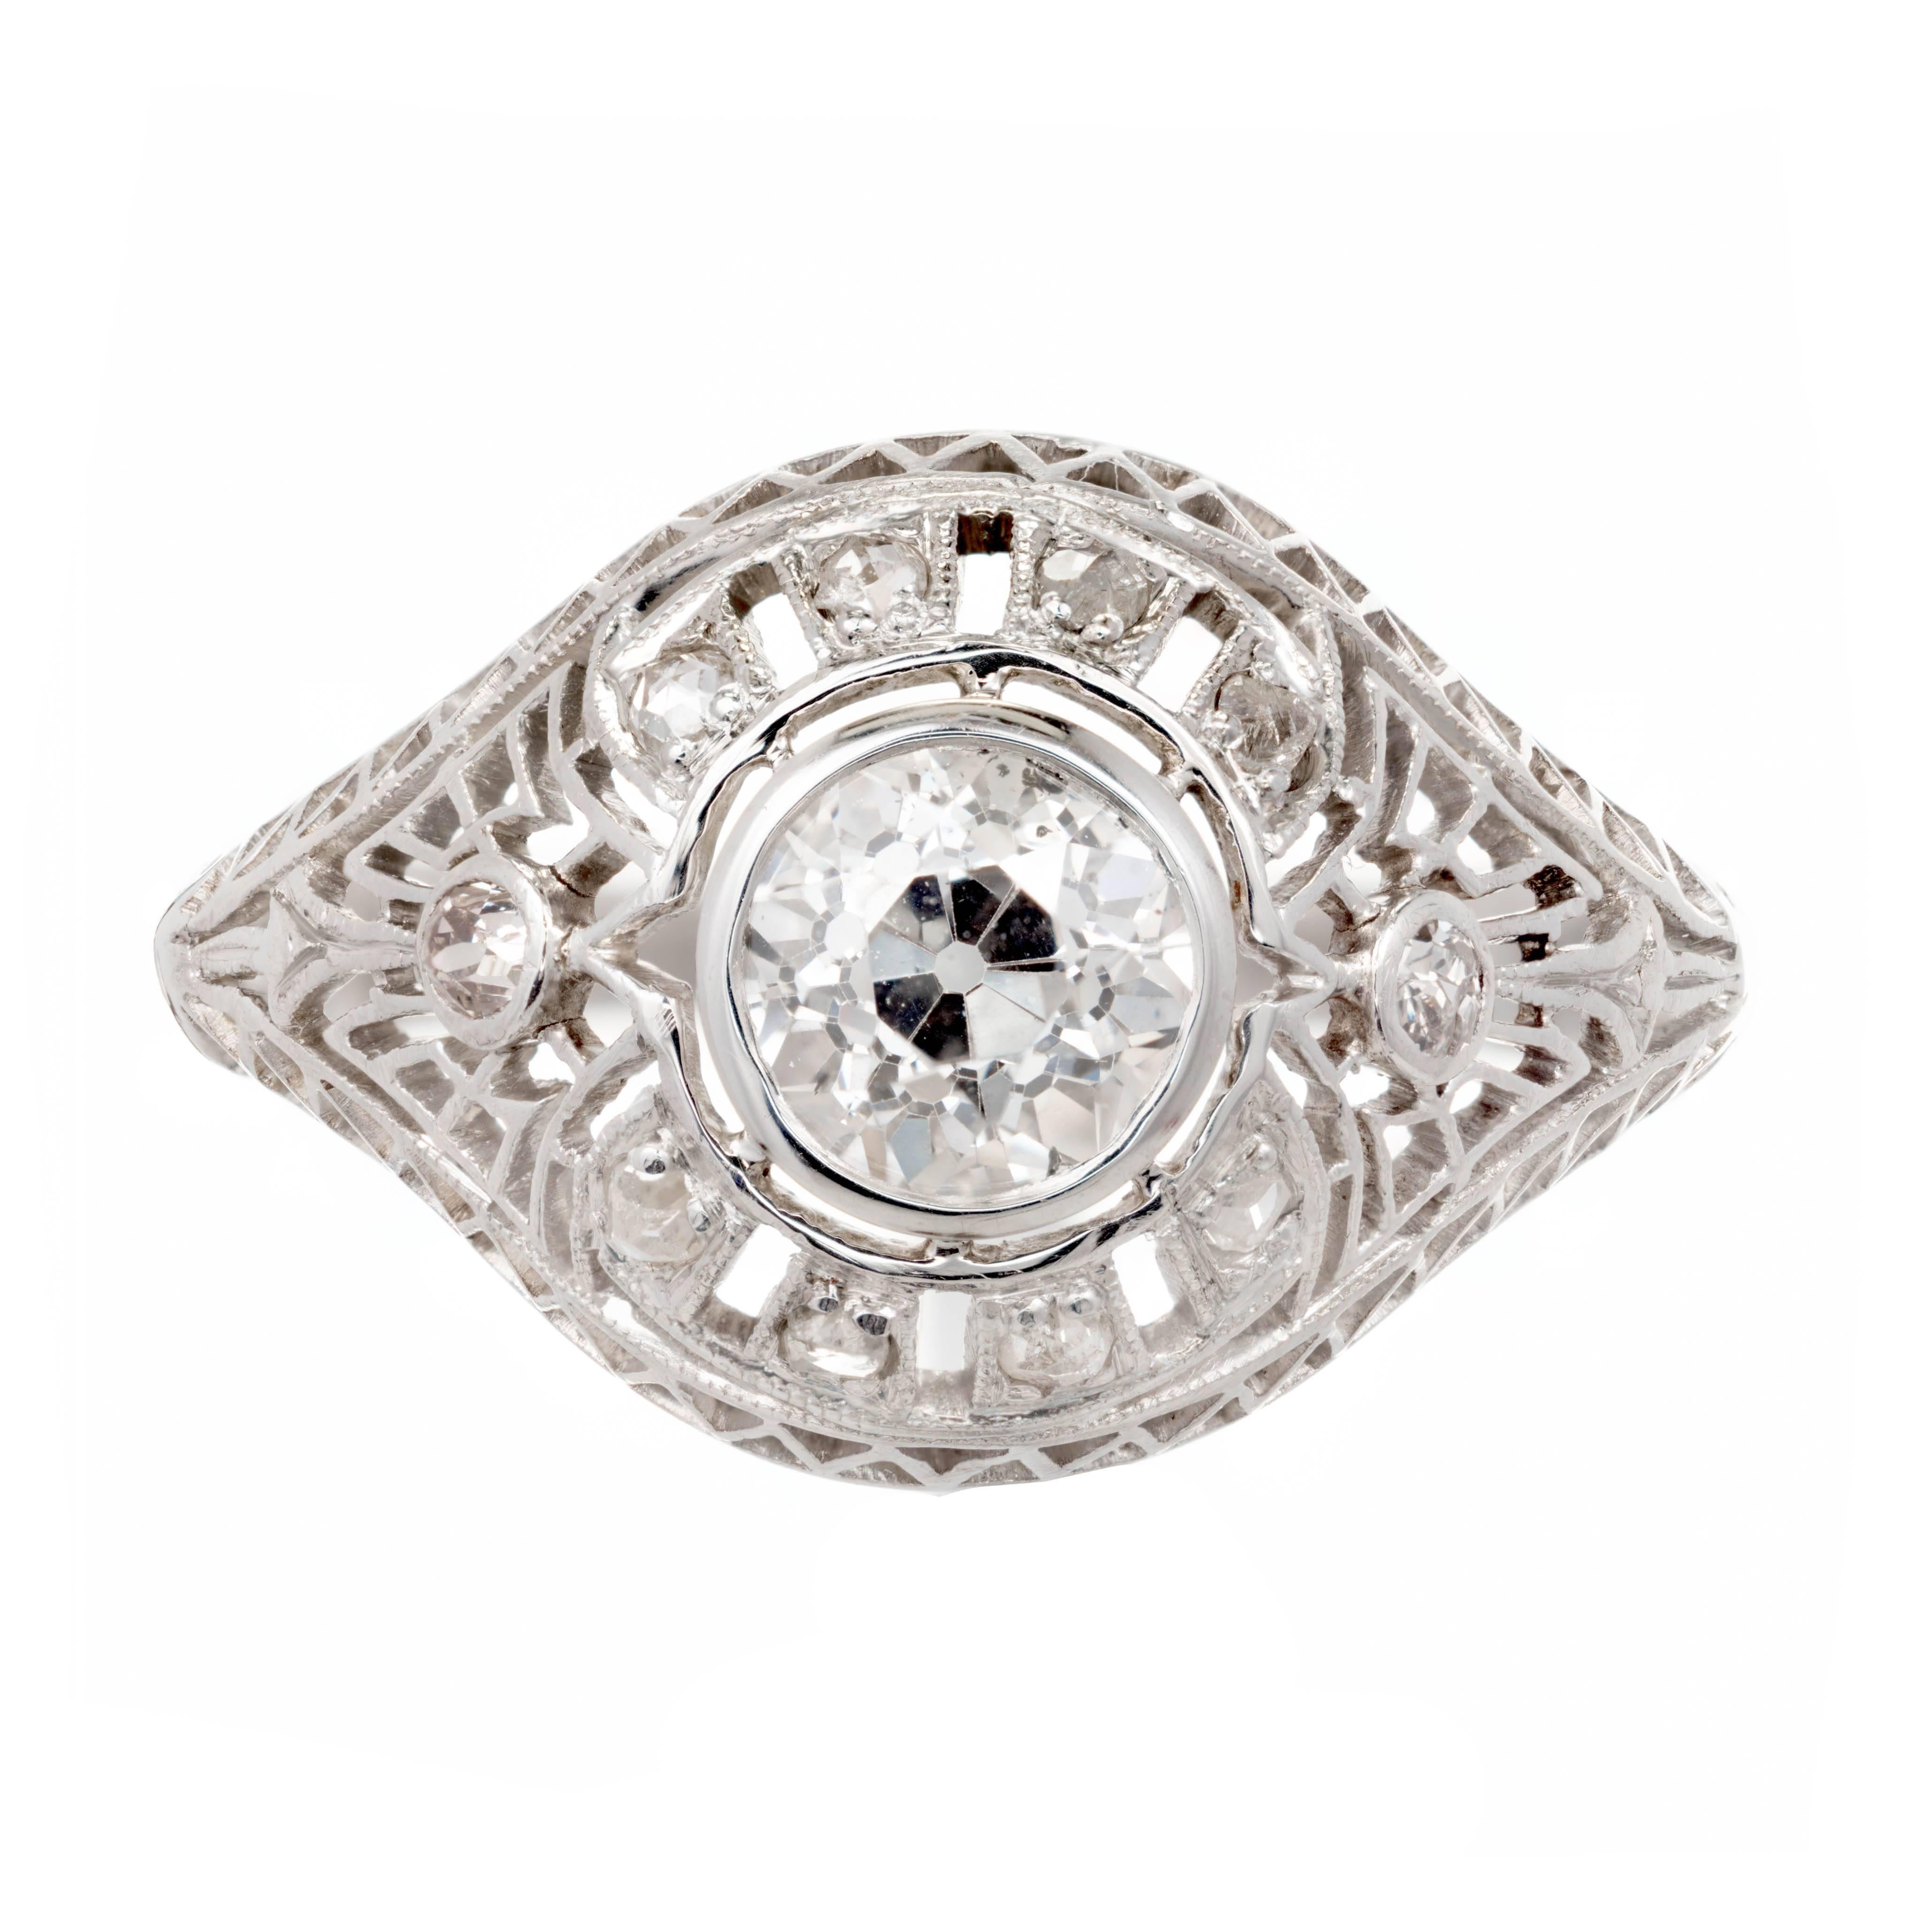 Original Vintage 1910 Edwardian handgefertigt Diamant Platin filigran Kuppel Verlobungsring. Mit einem GIA-zertifizierten Diamanten im alten europäischen Schliff in der Mitte. Die zarte, durchbrochene Arbeit ist von Hand mit schönen